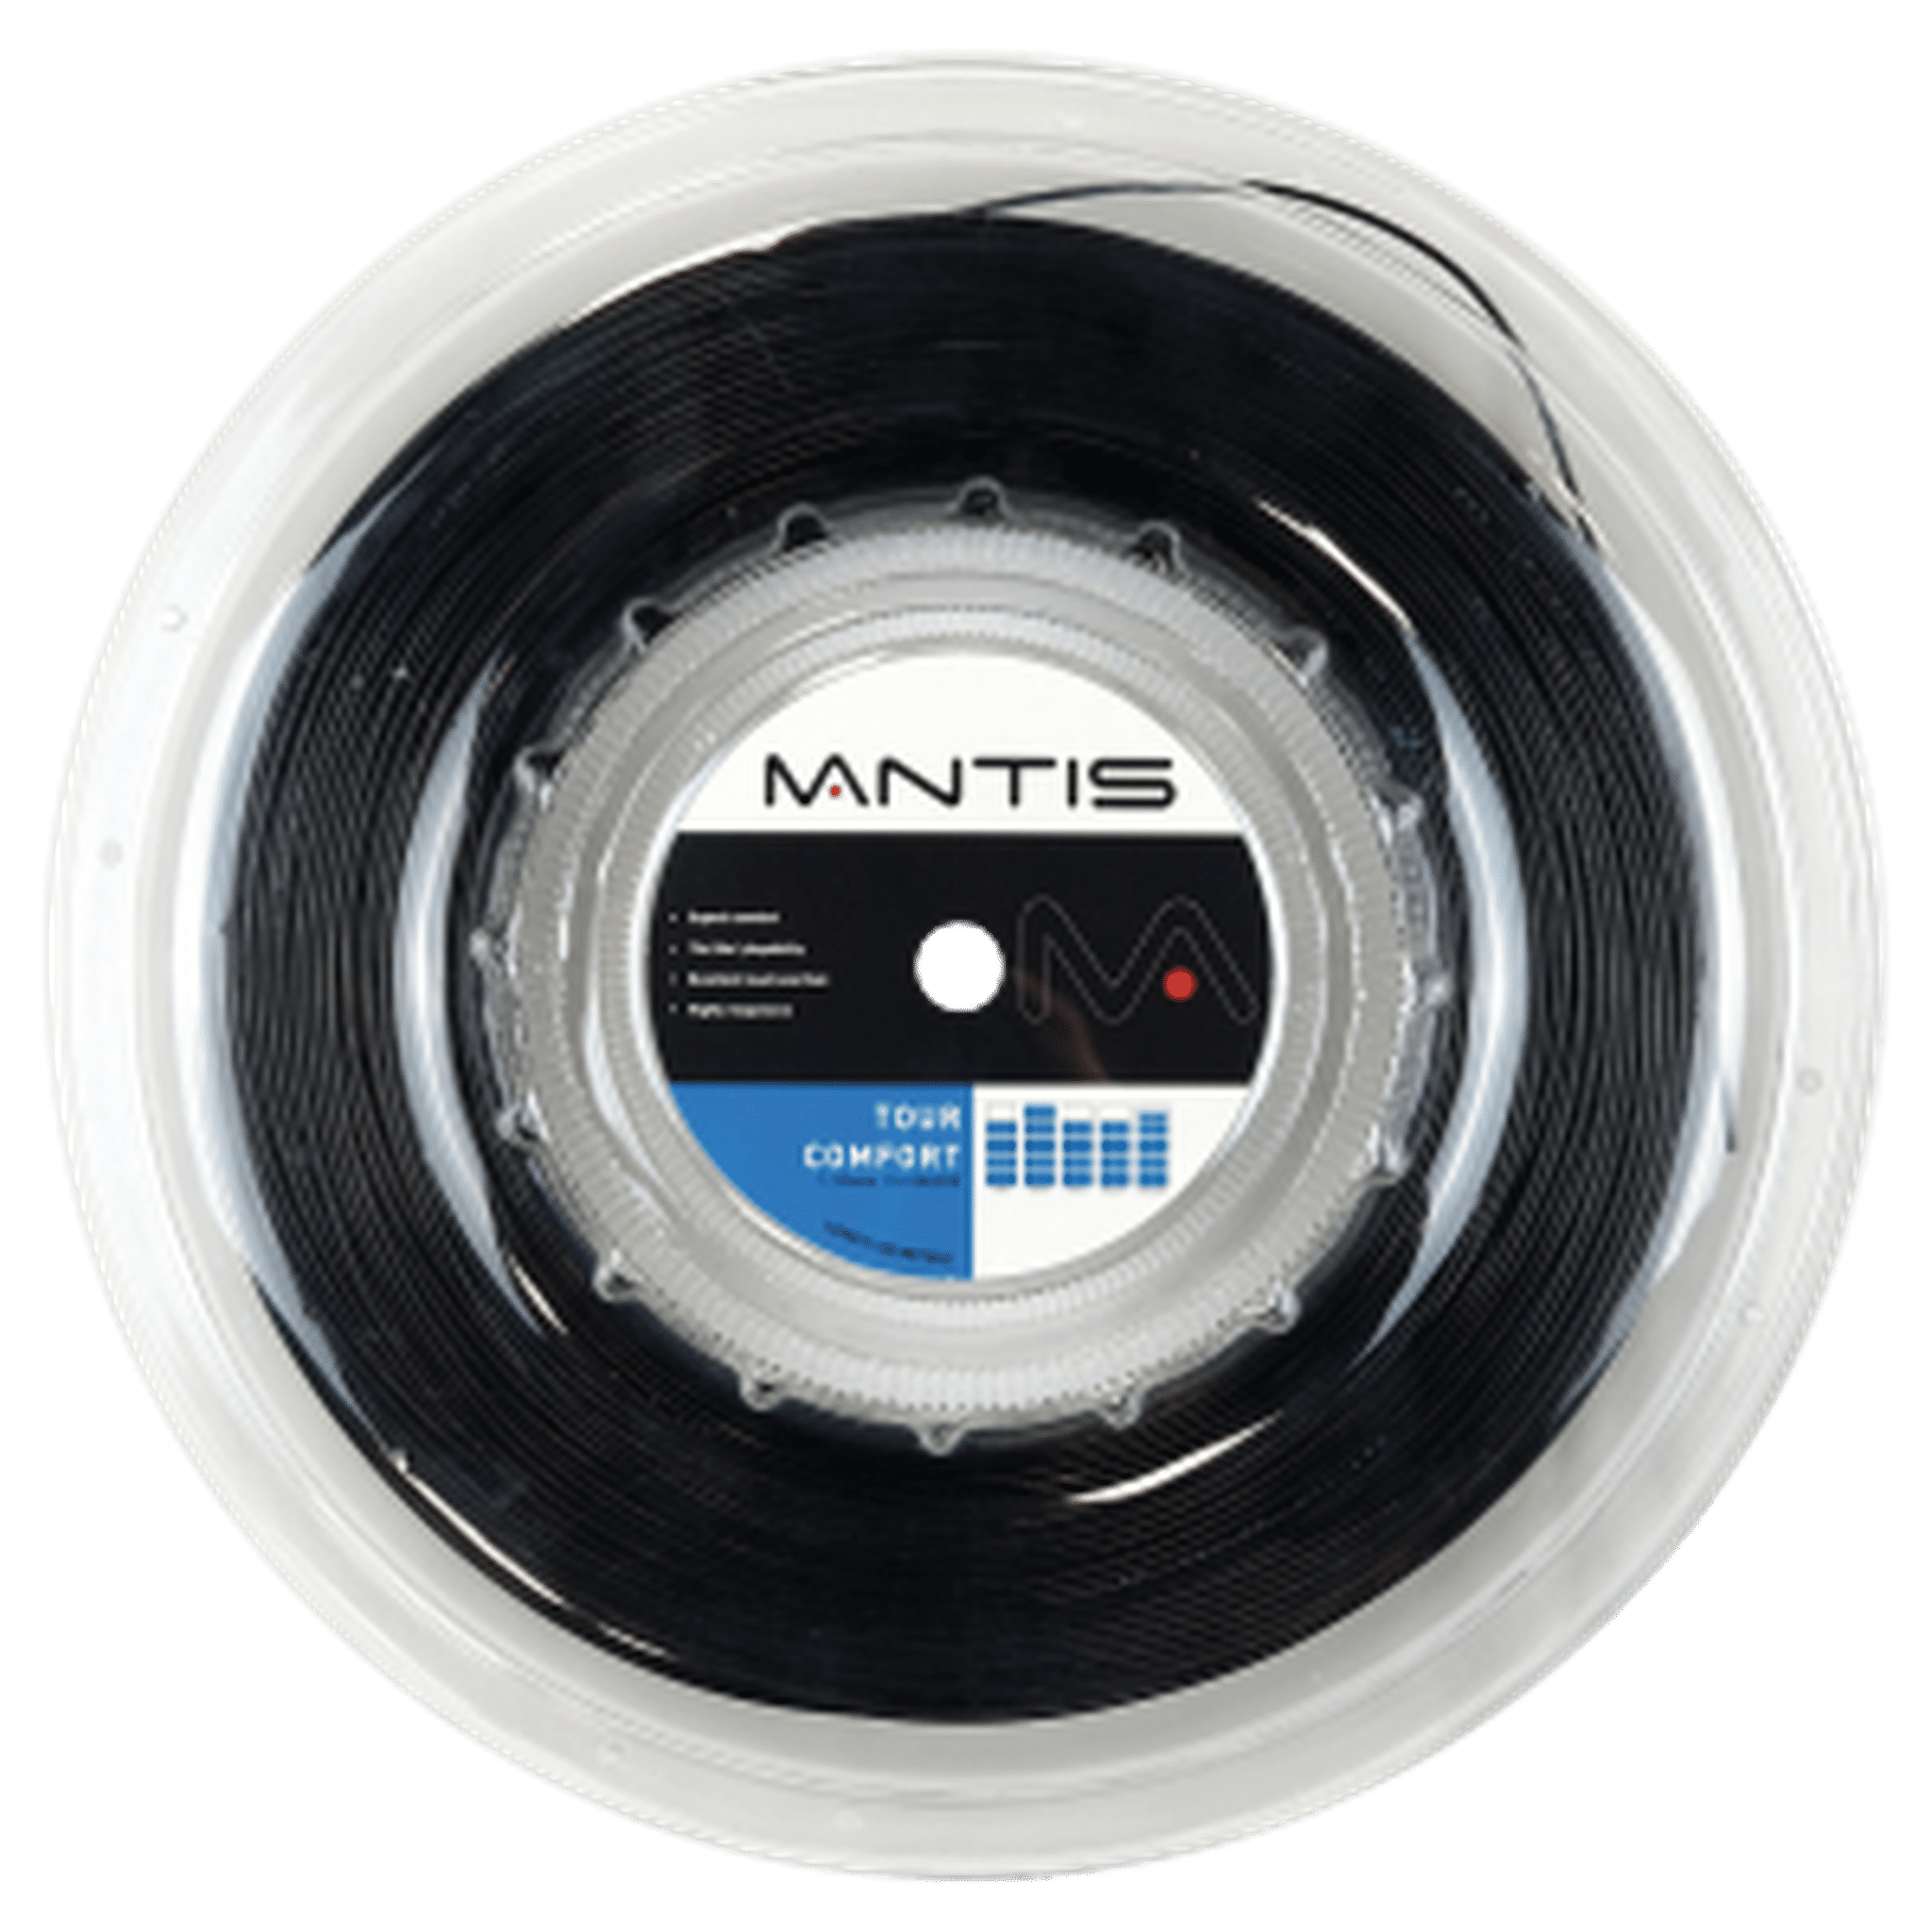 MANTIS Tour Comfort String 16G - Reel 200m